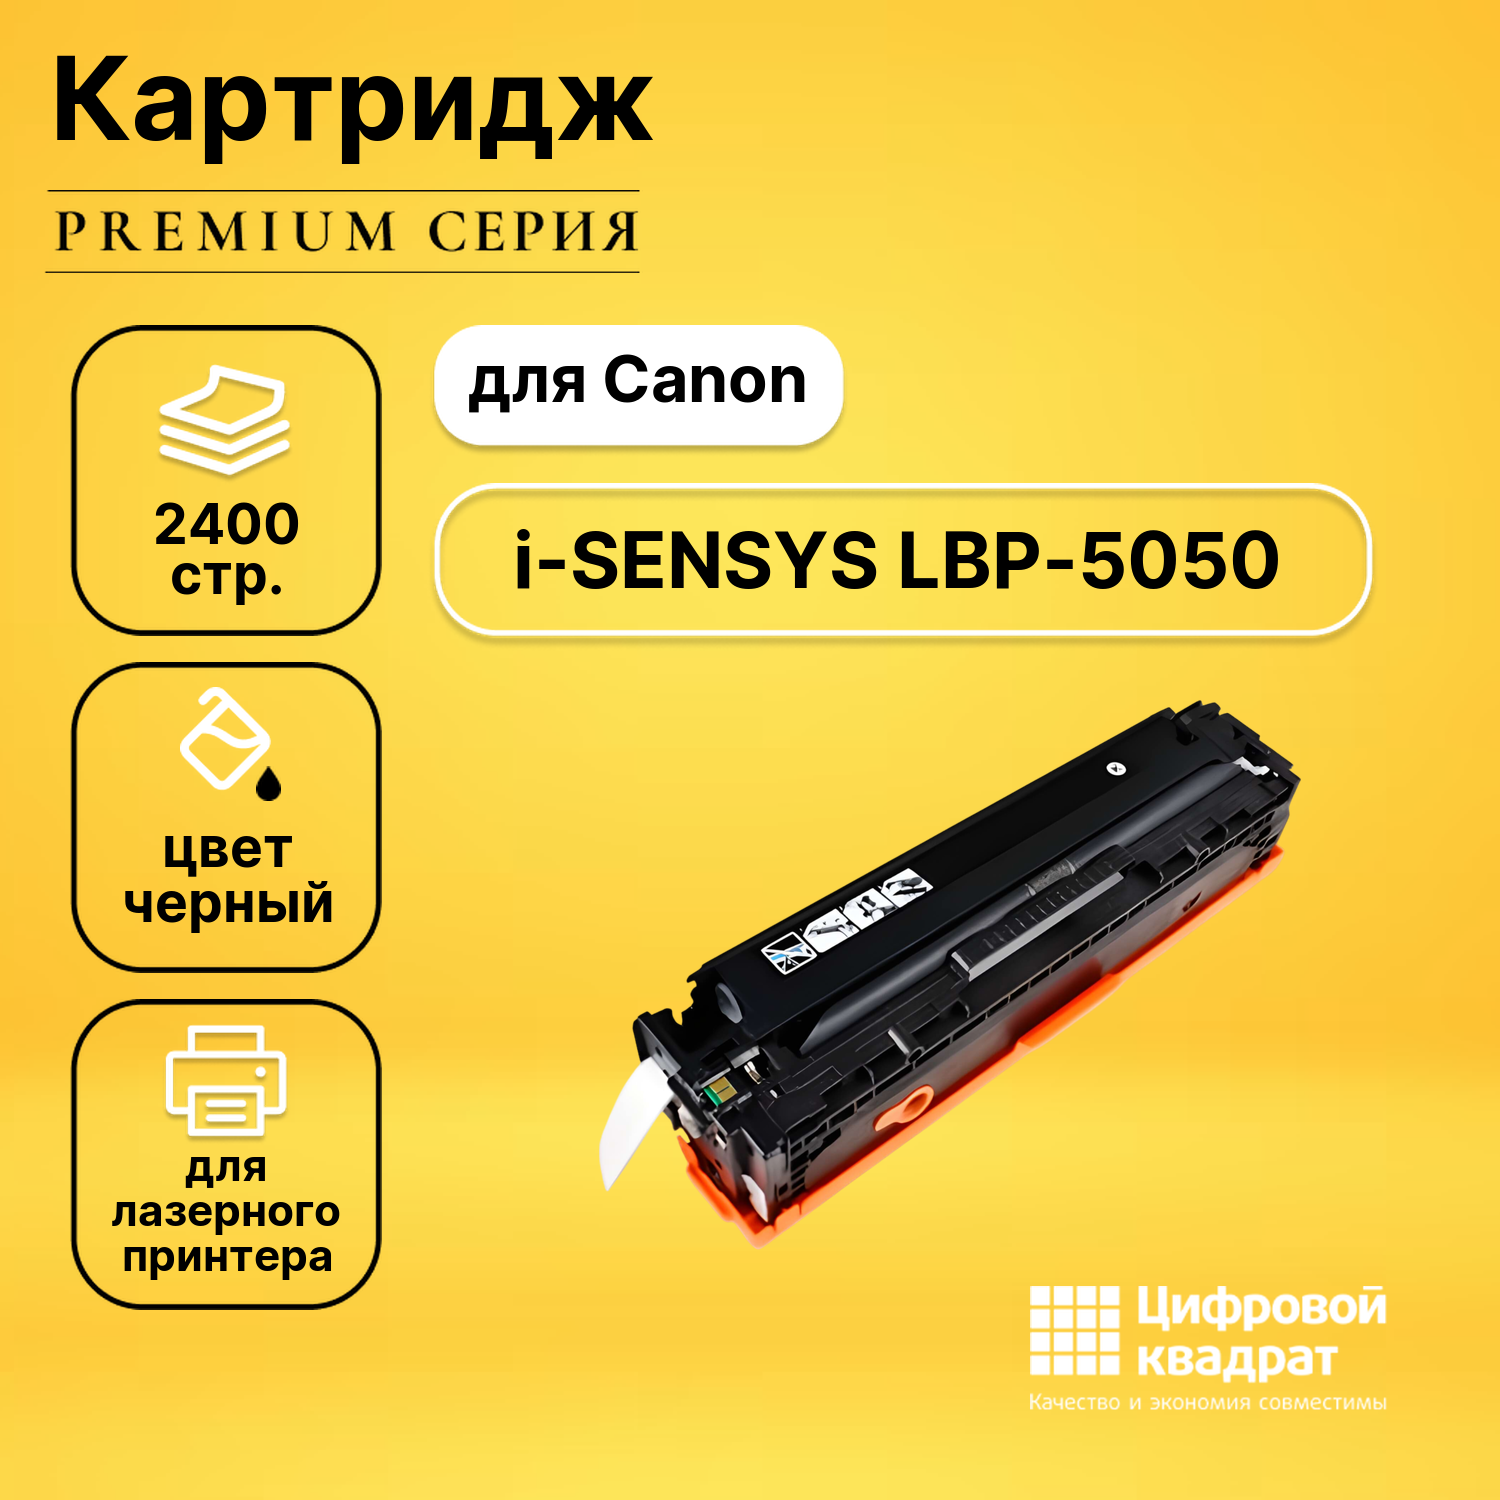 Картридж DS для Canon i-SENSYS LBP-5050 с чипом совместимый